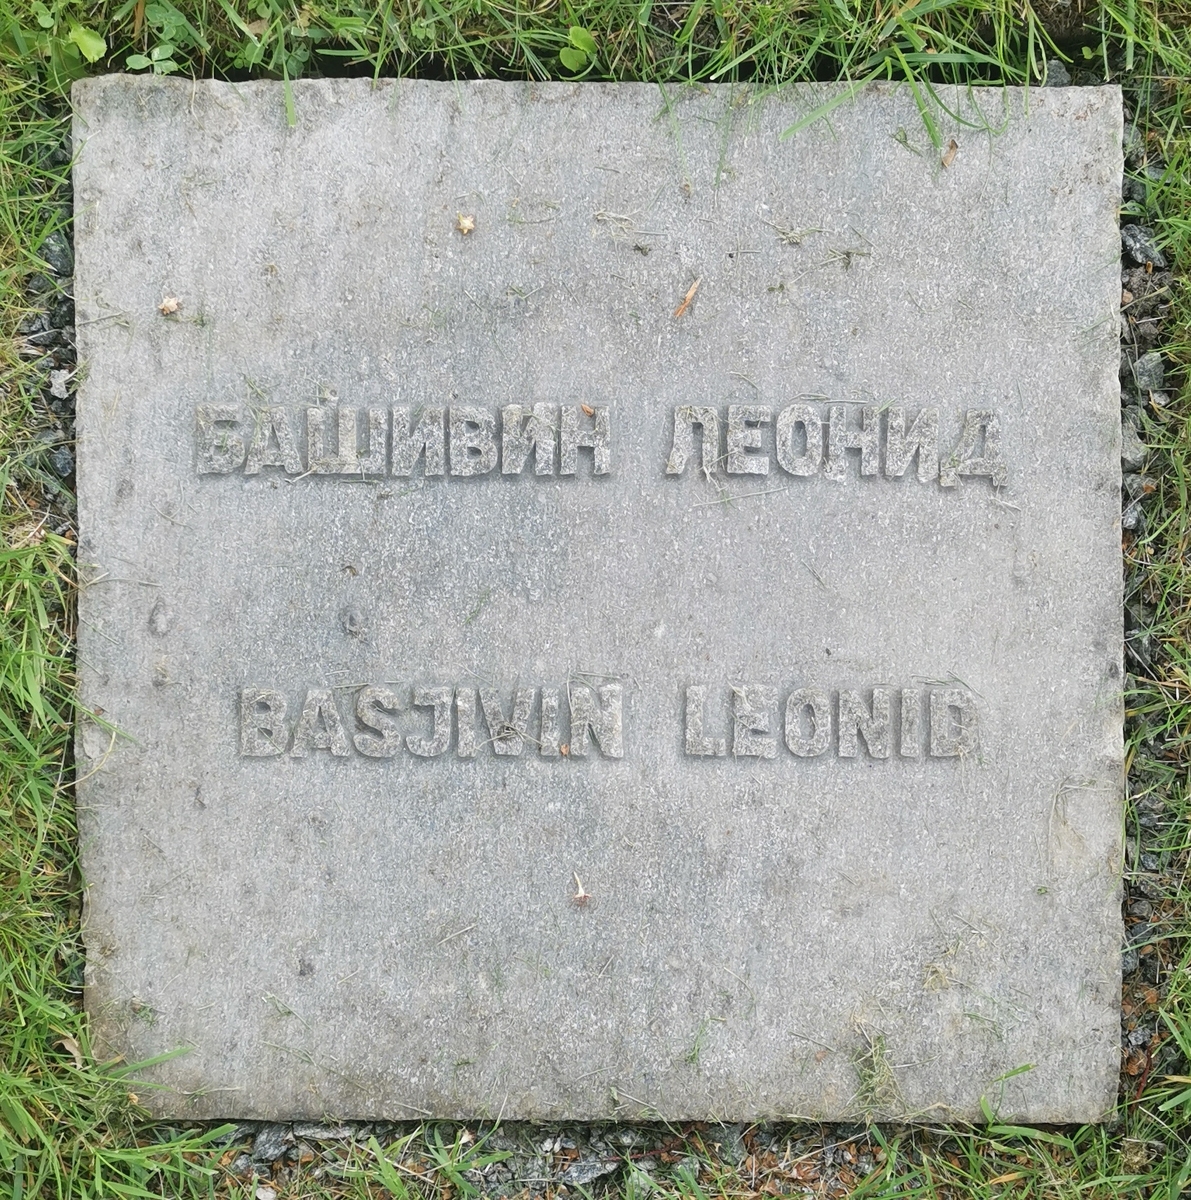 Leonid Jermolajevitsj Razzjivin (1919–1943), sovjetisk krigsfange. Gravminne på Aukra kirkegård. På grava er etternavnet skrevet "Basjivin".